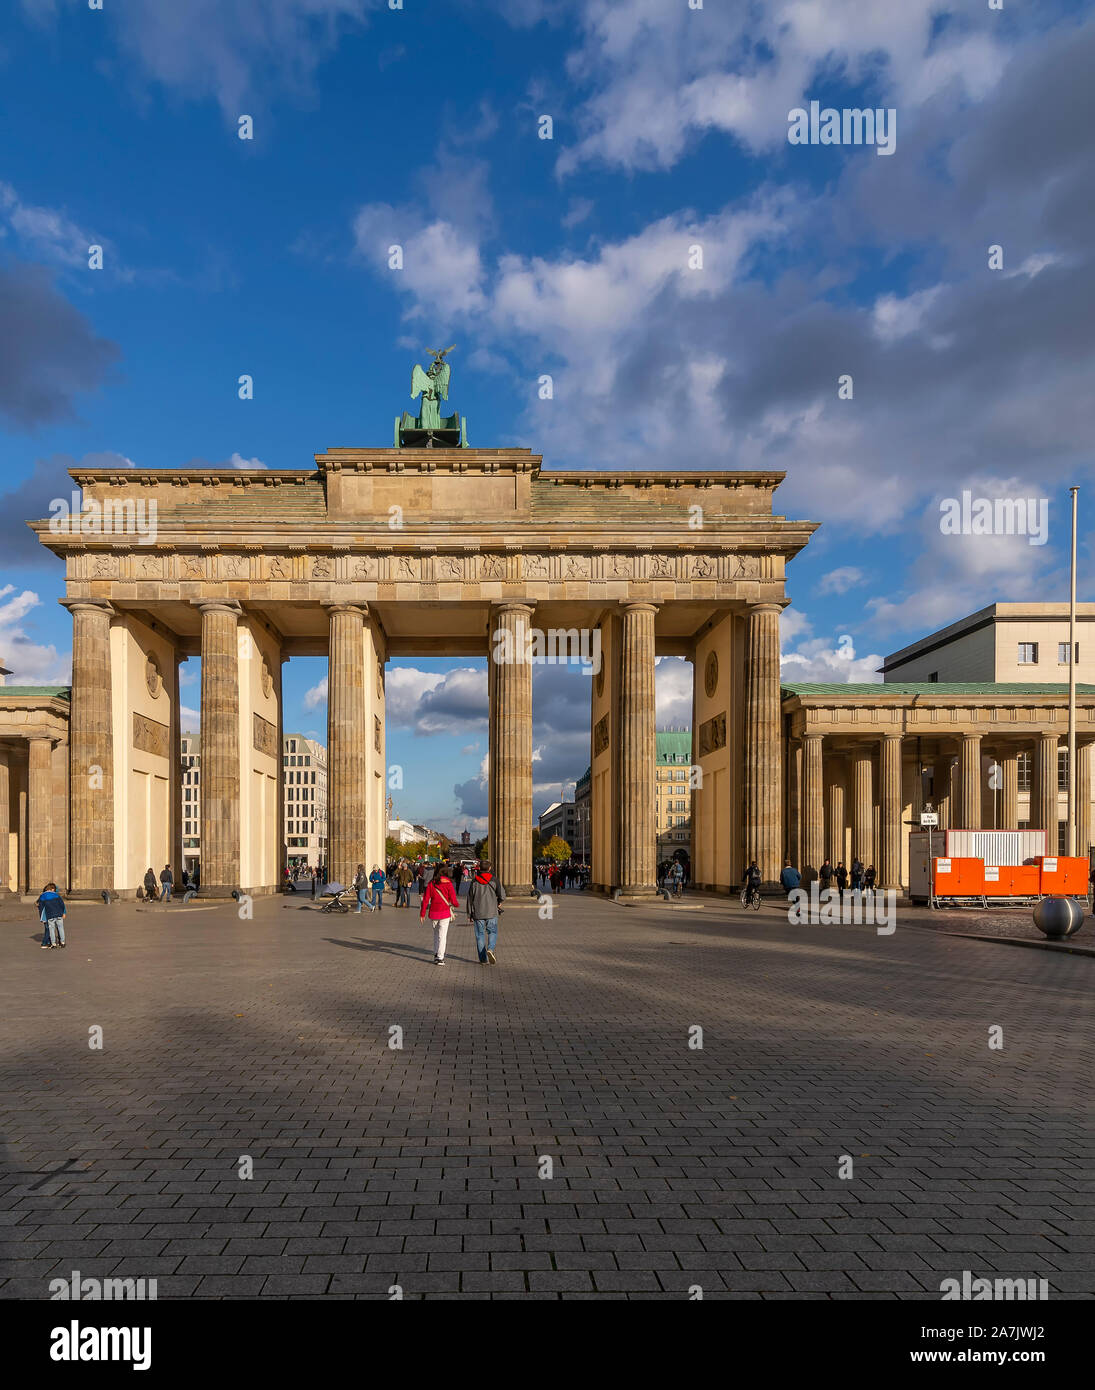 La Porta di Brandeburgo a Berlino, Germania, contro un bel cielo azzurro con alcune nuvole Foto Stock